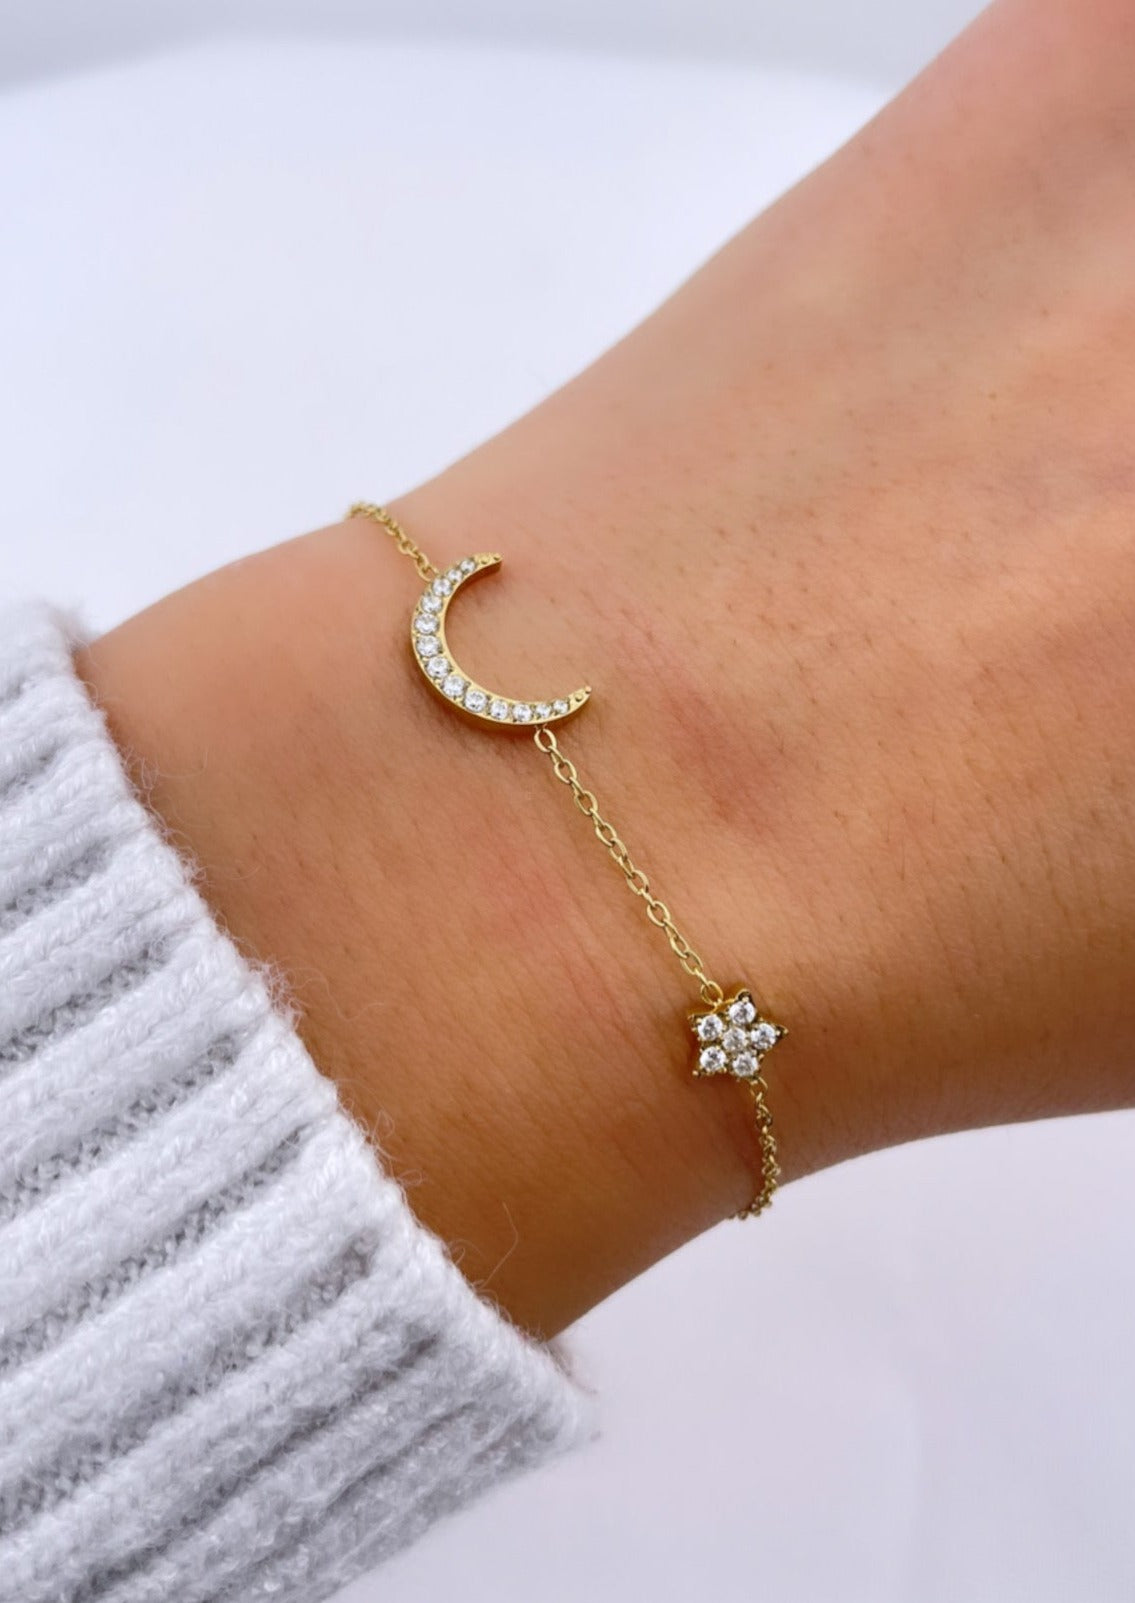 MOONLIGHT - Bracelet avec lune, étoile et zirconias